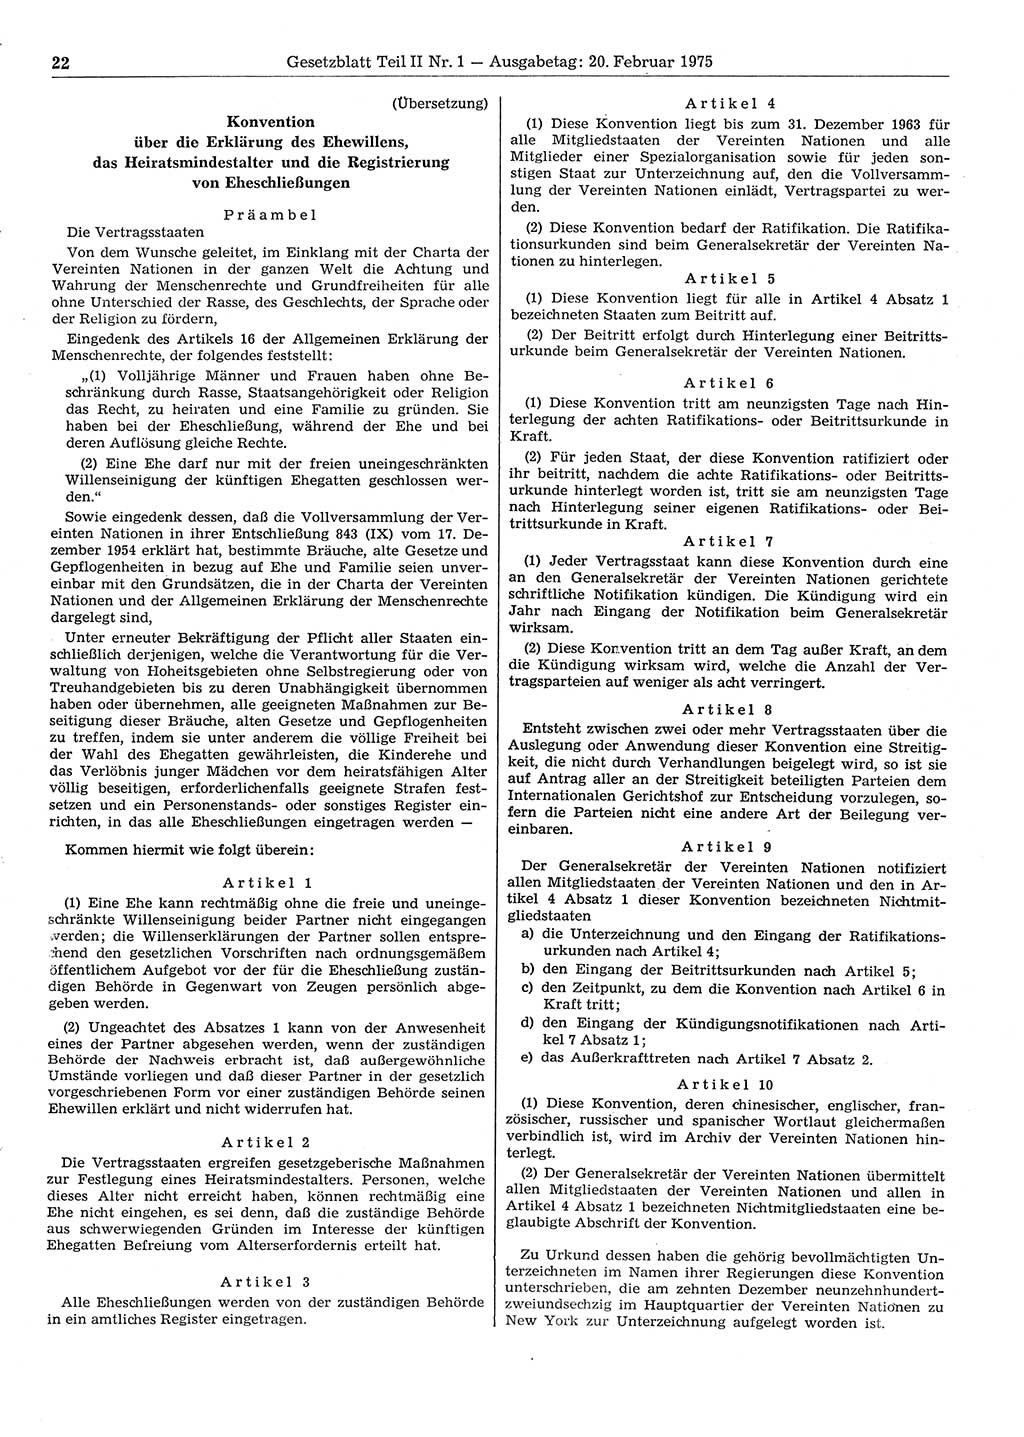 Gesetzblatt (GBl.) der Deutschen Demokratischen Republik (DDR) Teil ⅠⅠ 1975, Seite 22 (GBl. DDR ⅠⅠ 1975, S. 22)